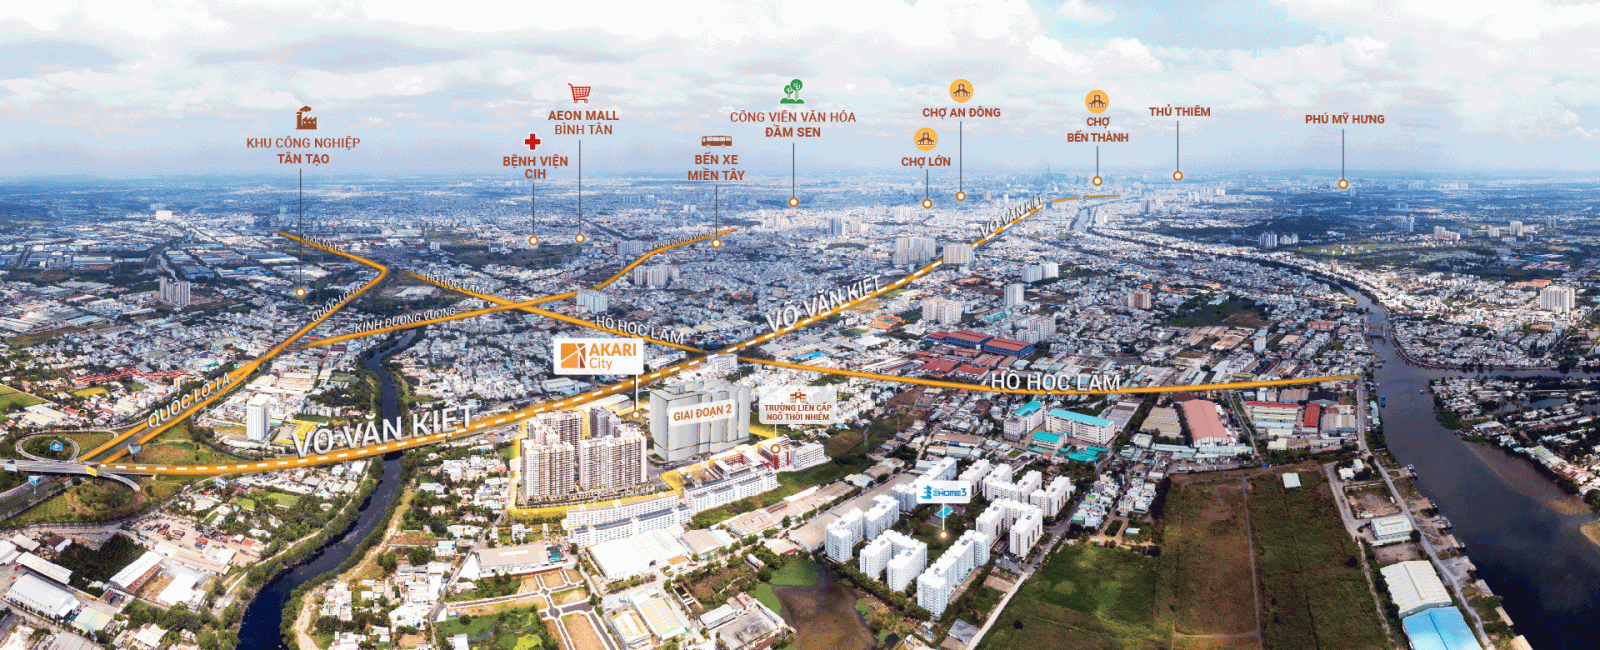 chi tiết vị trí dự án akari city của CĐT Nam Long trên đường Võ Văn Kiệt